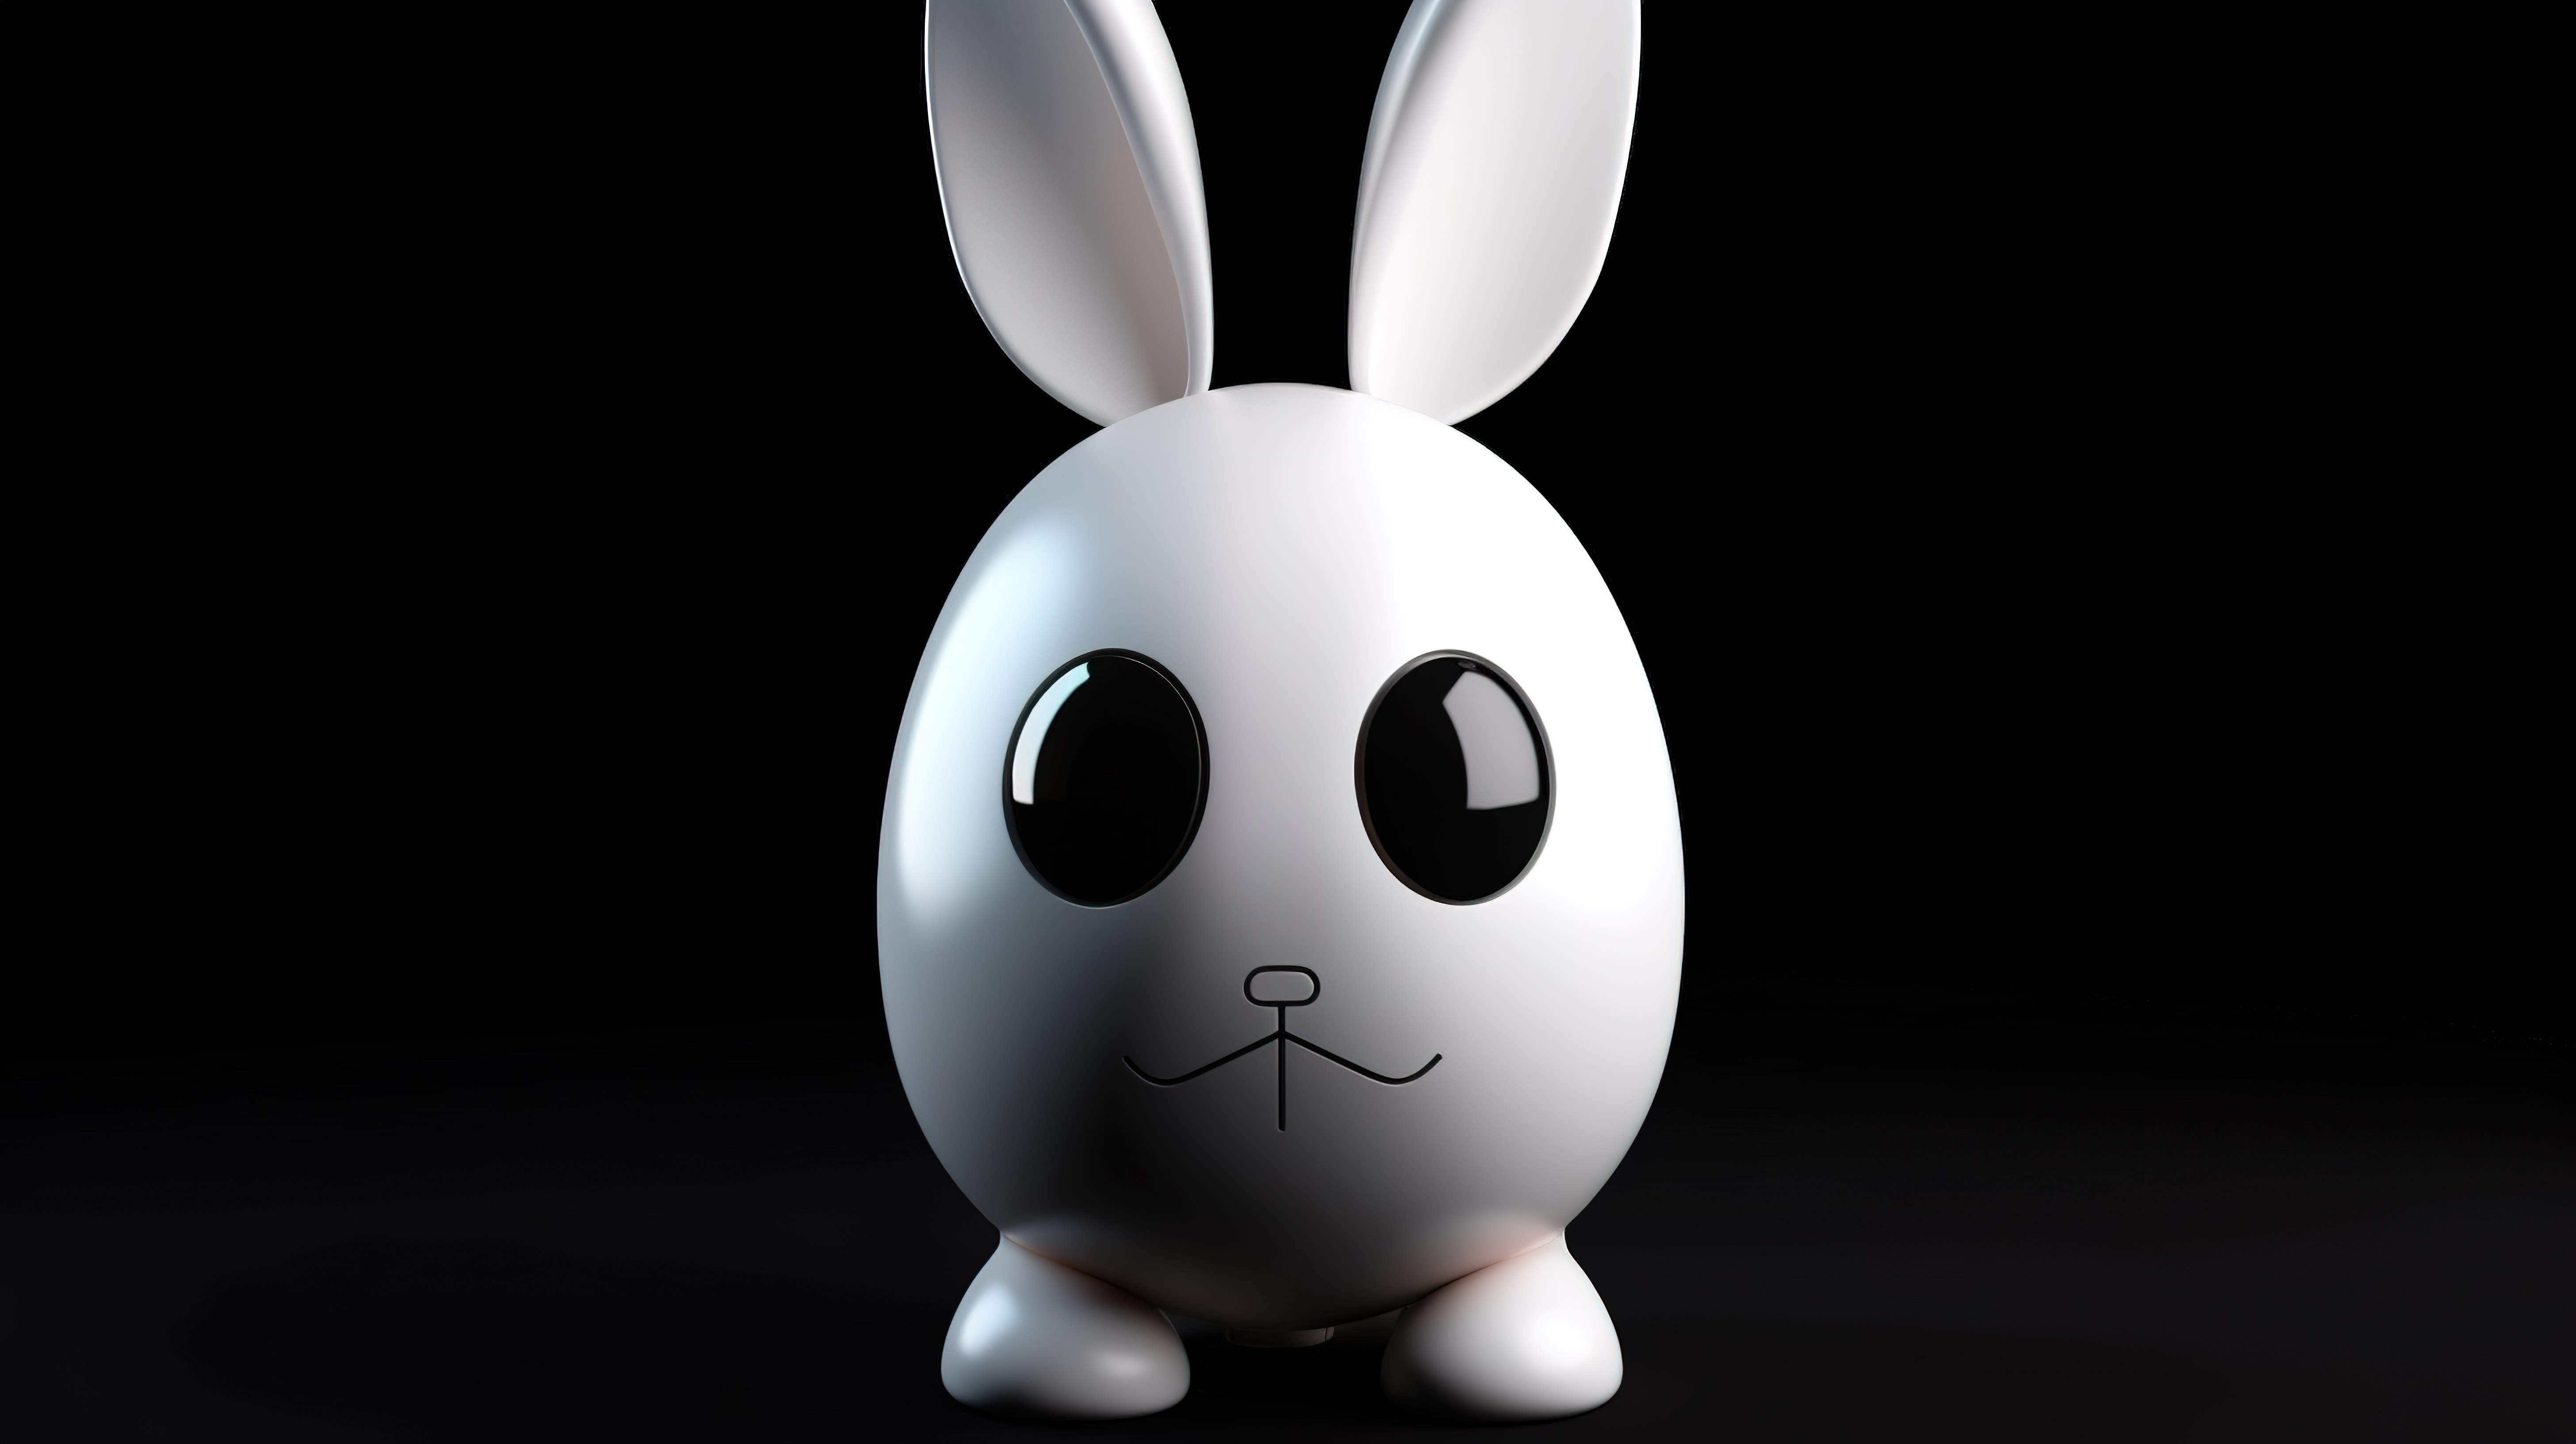 黑色背景展示 3d 渲染的白色兔子脸复活节彩蛋兔子长耳朵图片